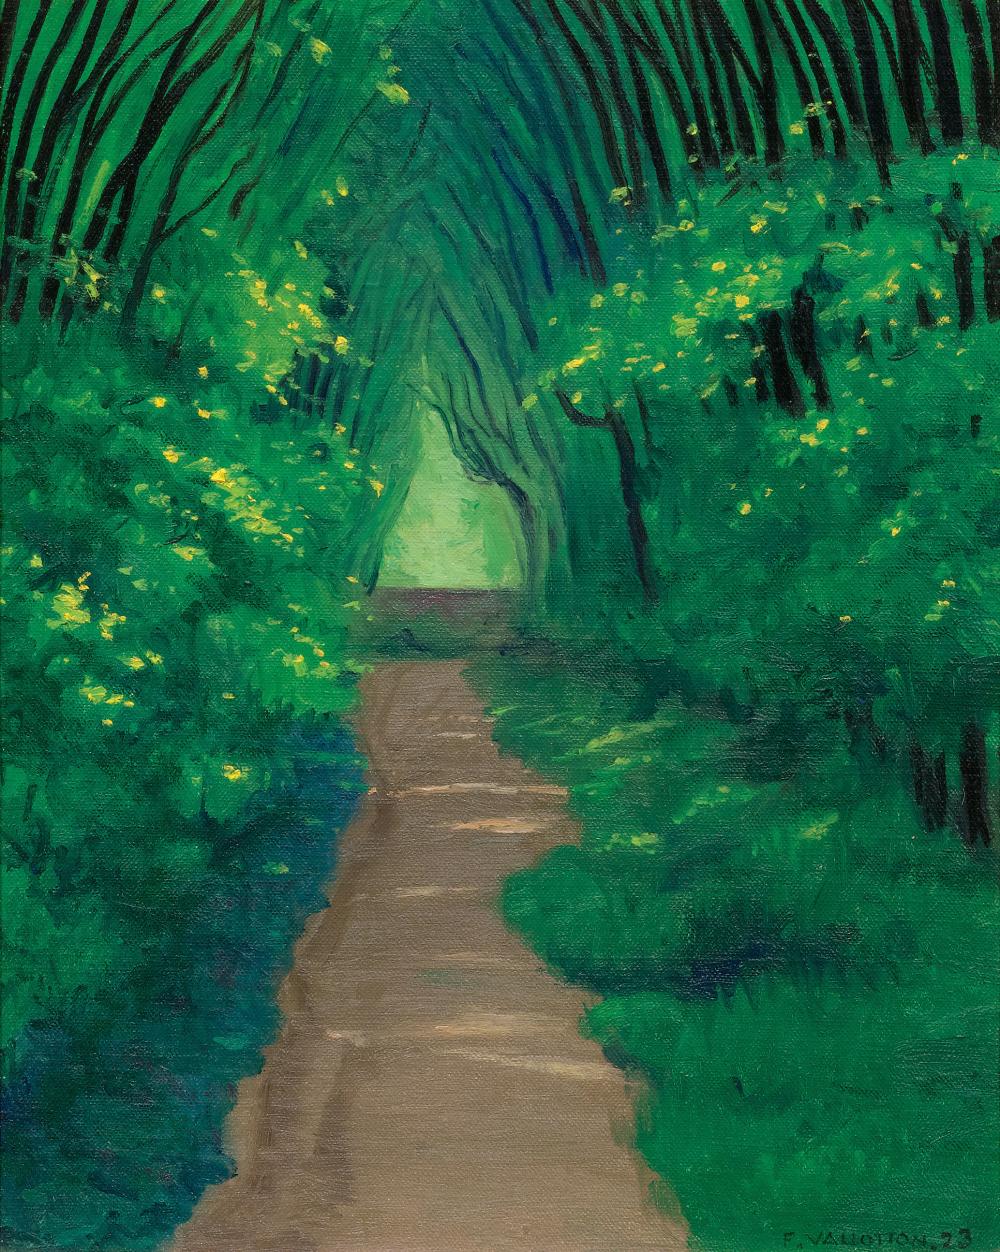 Rodin Müzesi Arazisinde Örtülü Bir Yürüyüş Yolu (orig. "A Covered Walkway in the Grounds of the Rodin Museum") by Félix Vallotton - 1923 - 41 x 33 cm özel koleksiyon